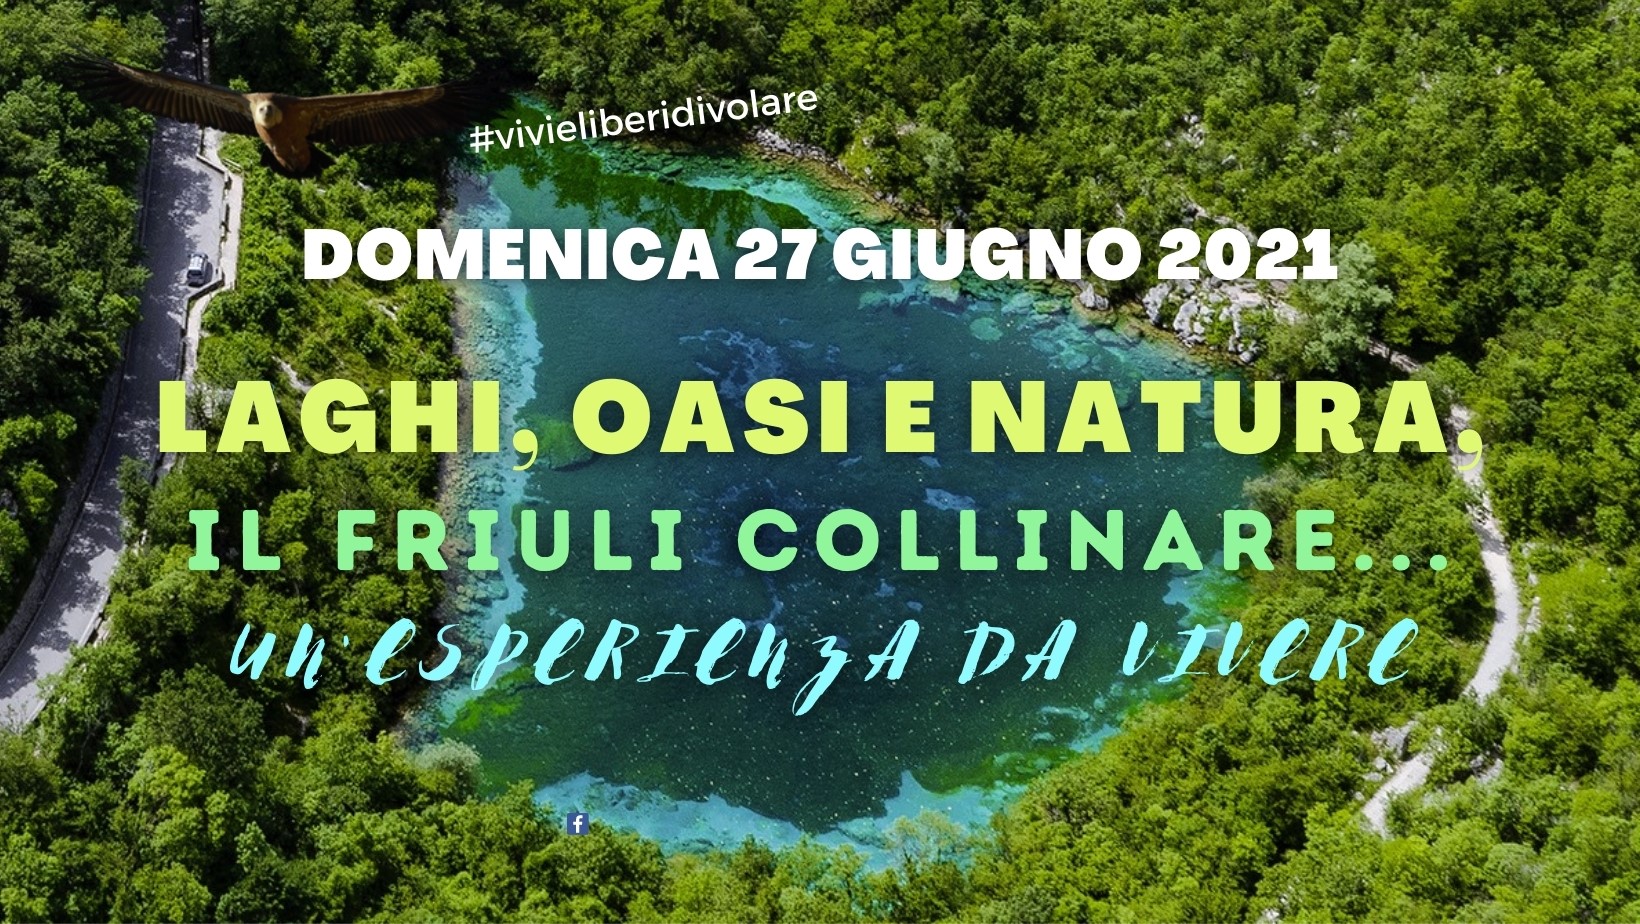 Laghi, oasi e natura, il Friuli collinare...un'esperienza da vivere - EventiFVG.it